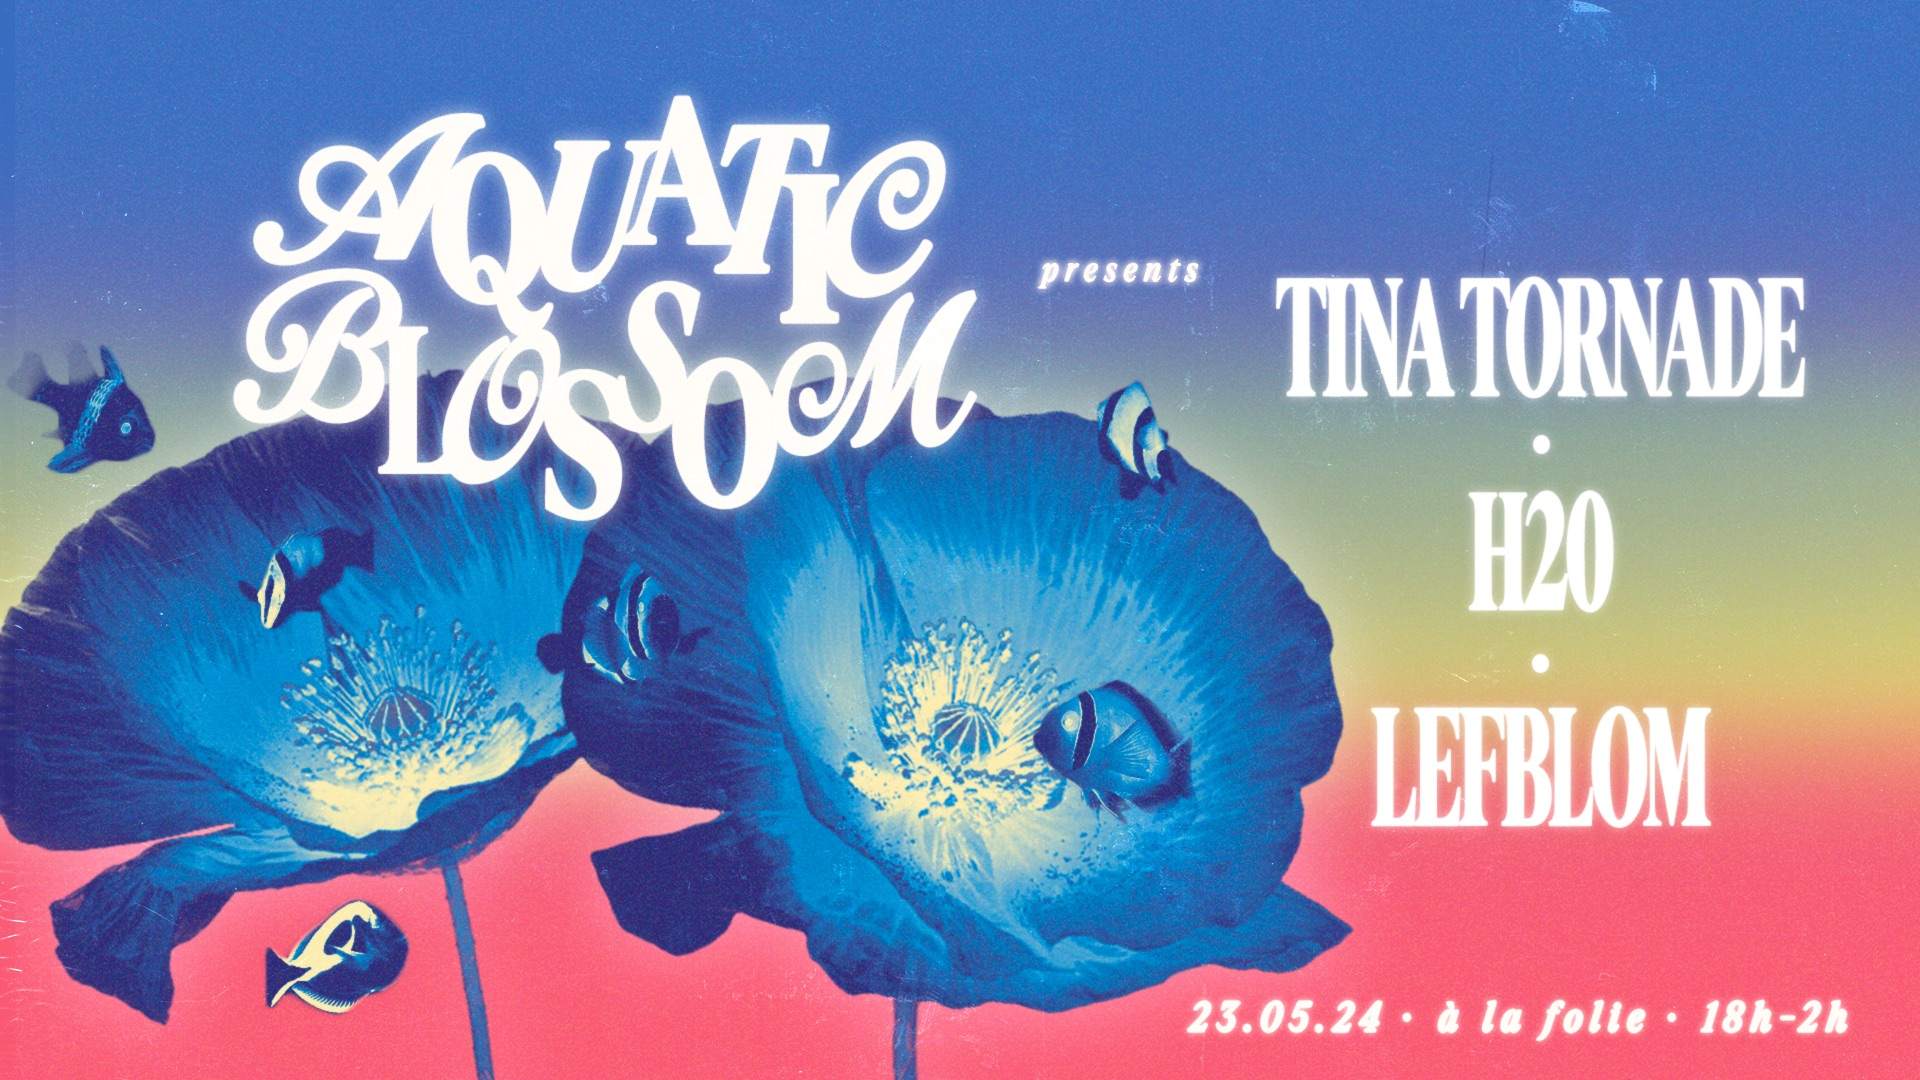 Aquatic Blossom #1 presents Tina Tornade, H2O & Lefblom - à la folie - Página frontal